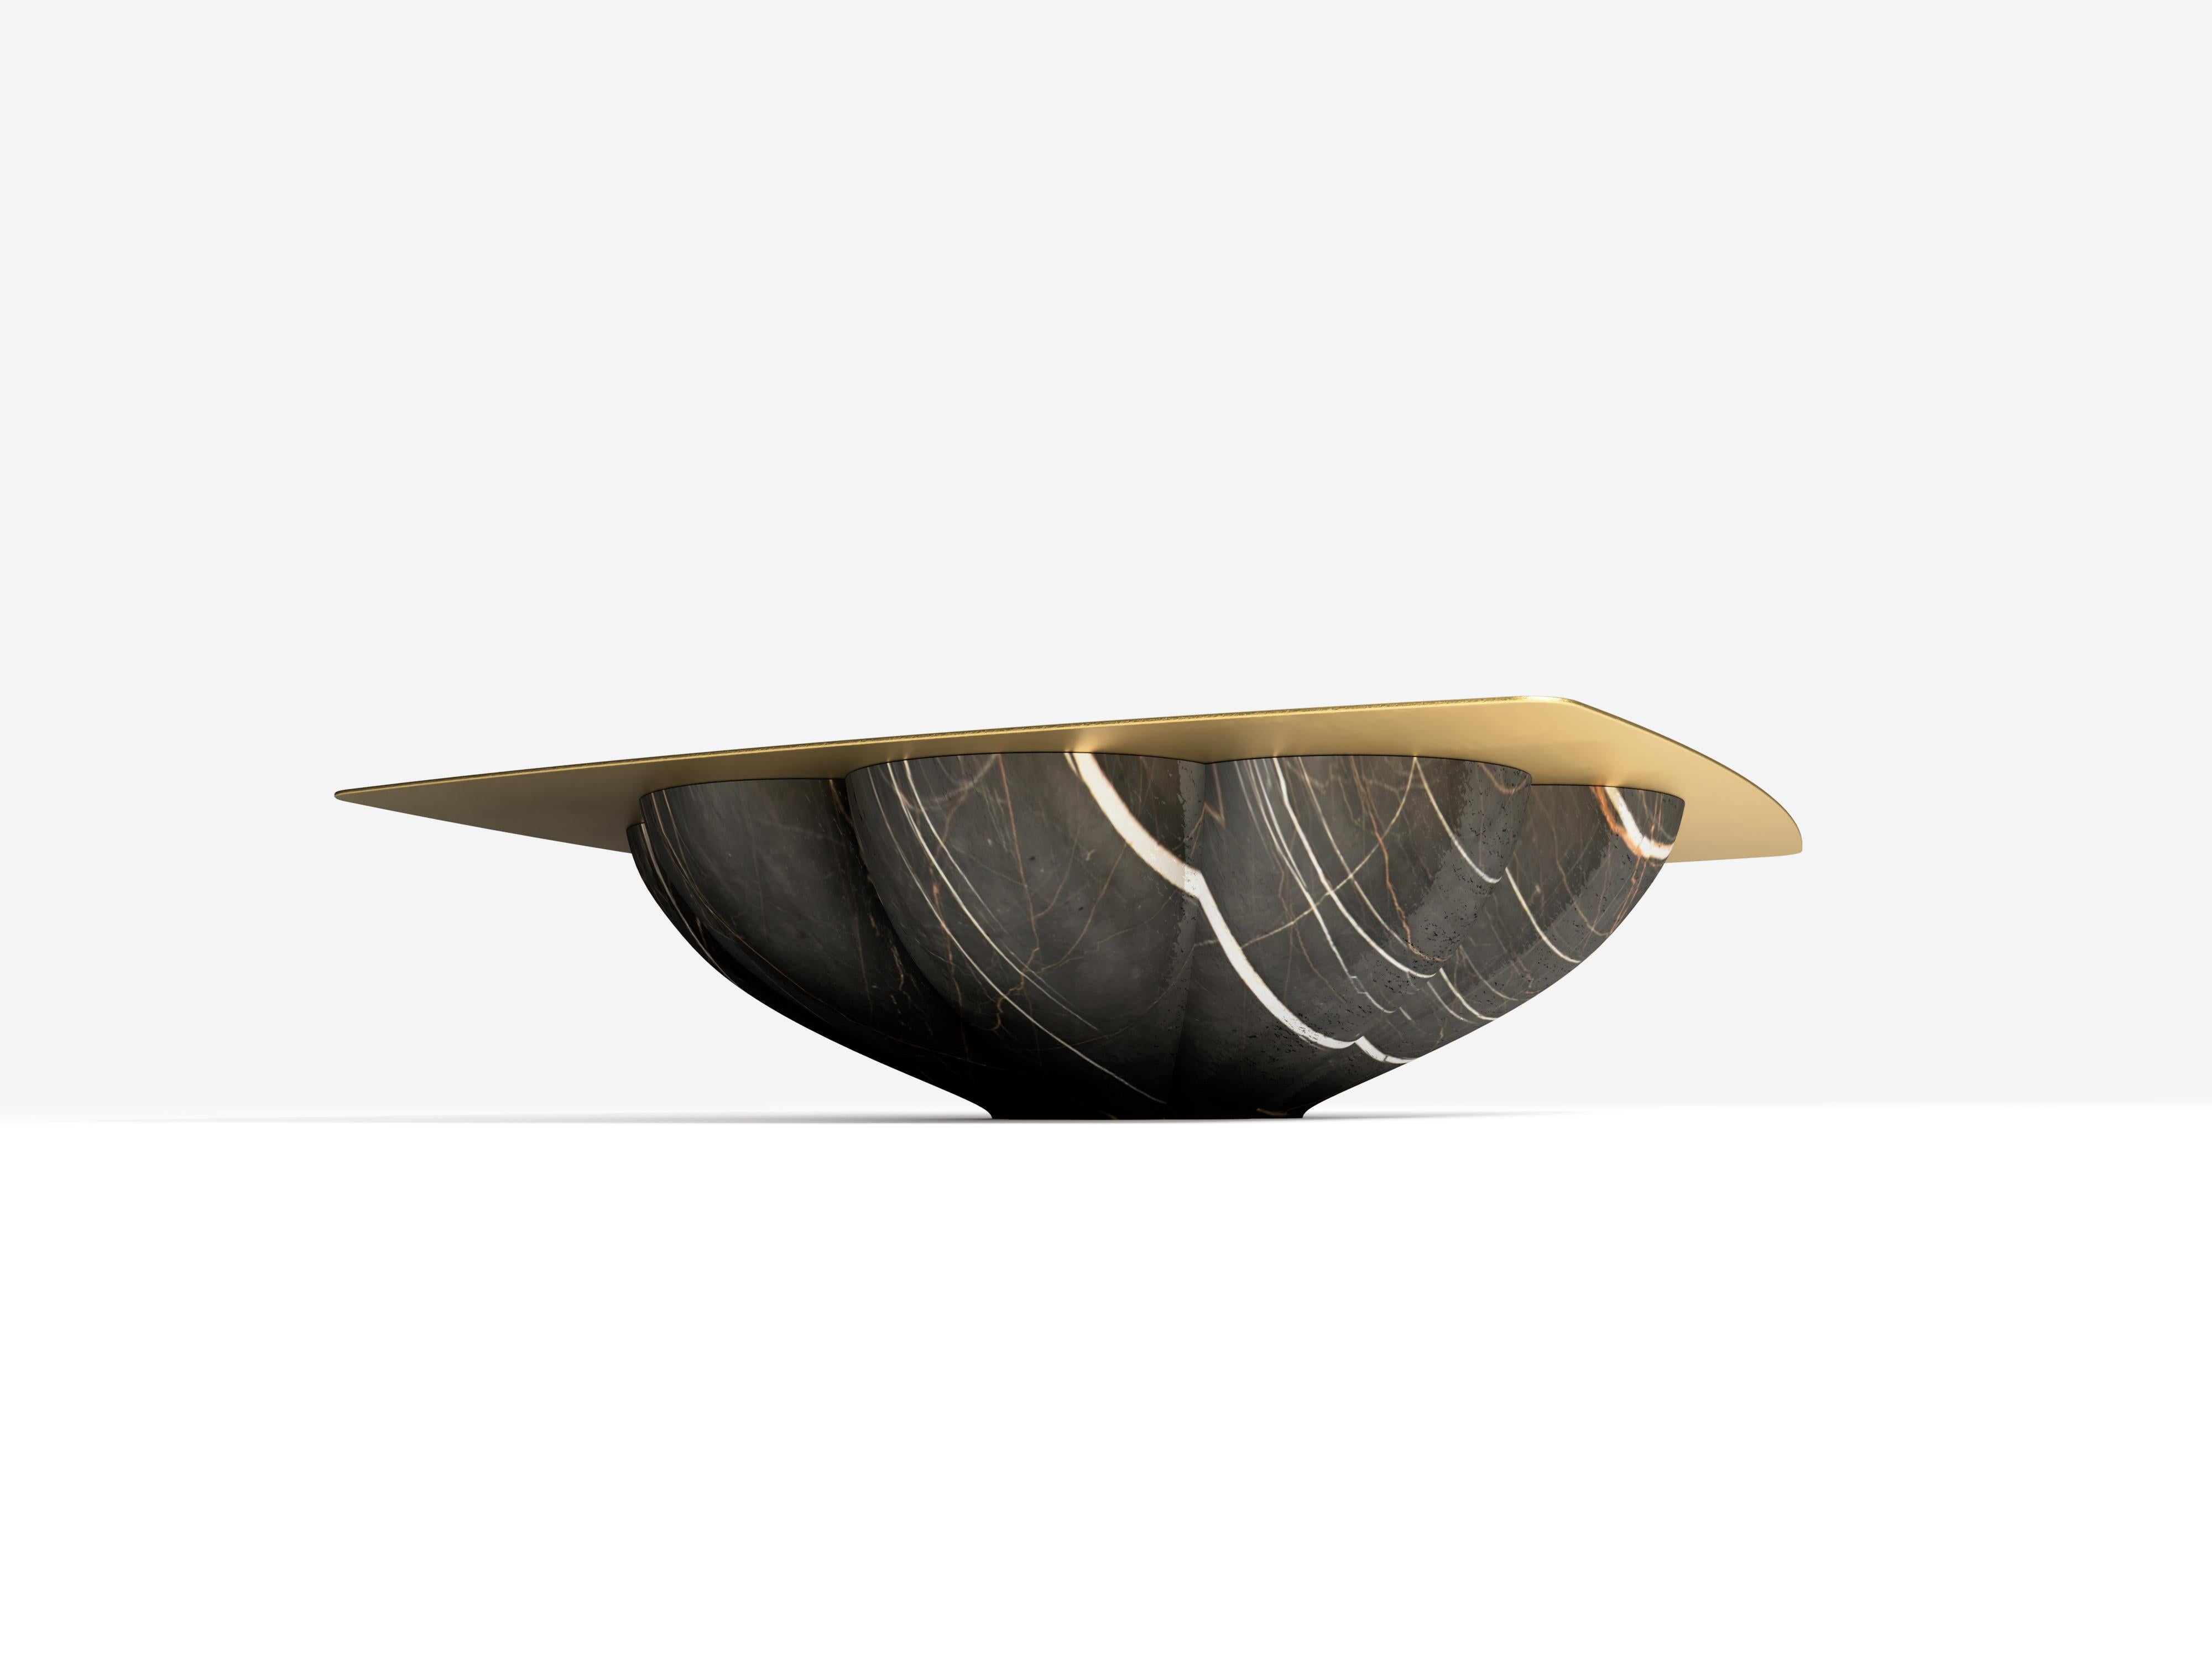 La table basse Lotus noir de Grzegorz Majka, 2021
Dimensions : 51.18 x 51.18 x 12.44 in
Matériaux : marbre, laiton.

Cette œuvre fait référence à la signification symbolique de la fleur de lotus. Renaissance, nouvelle voie, fortune et prospérité